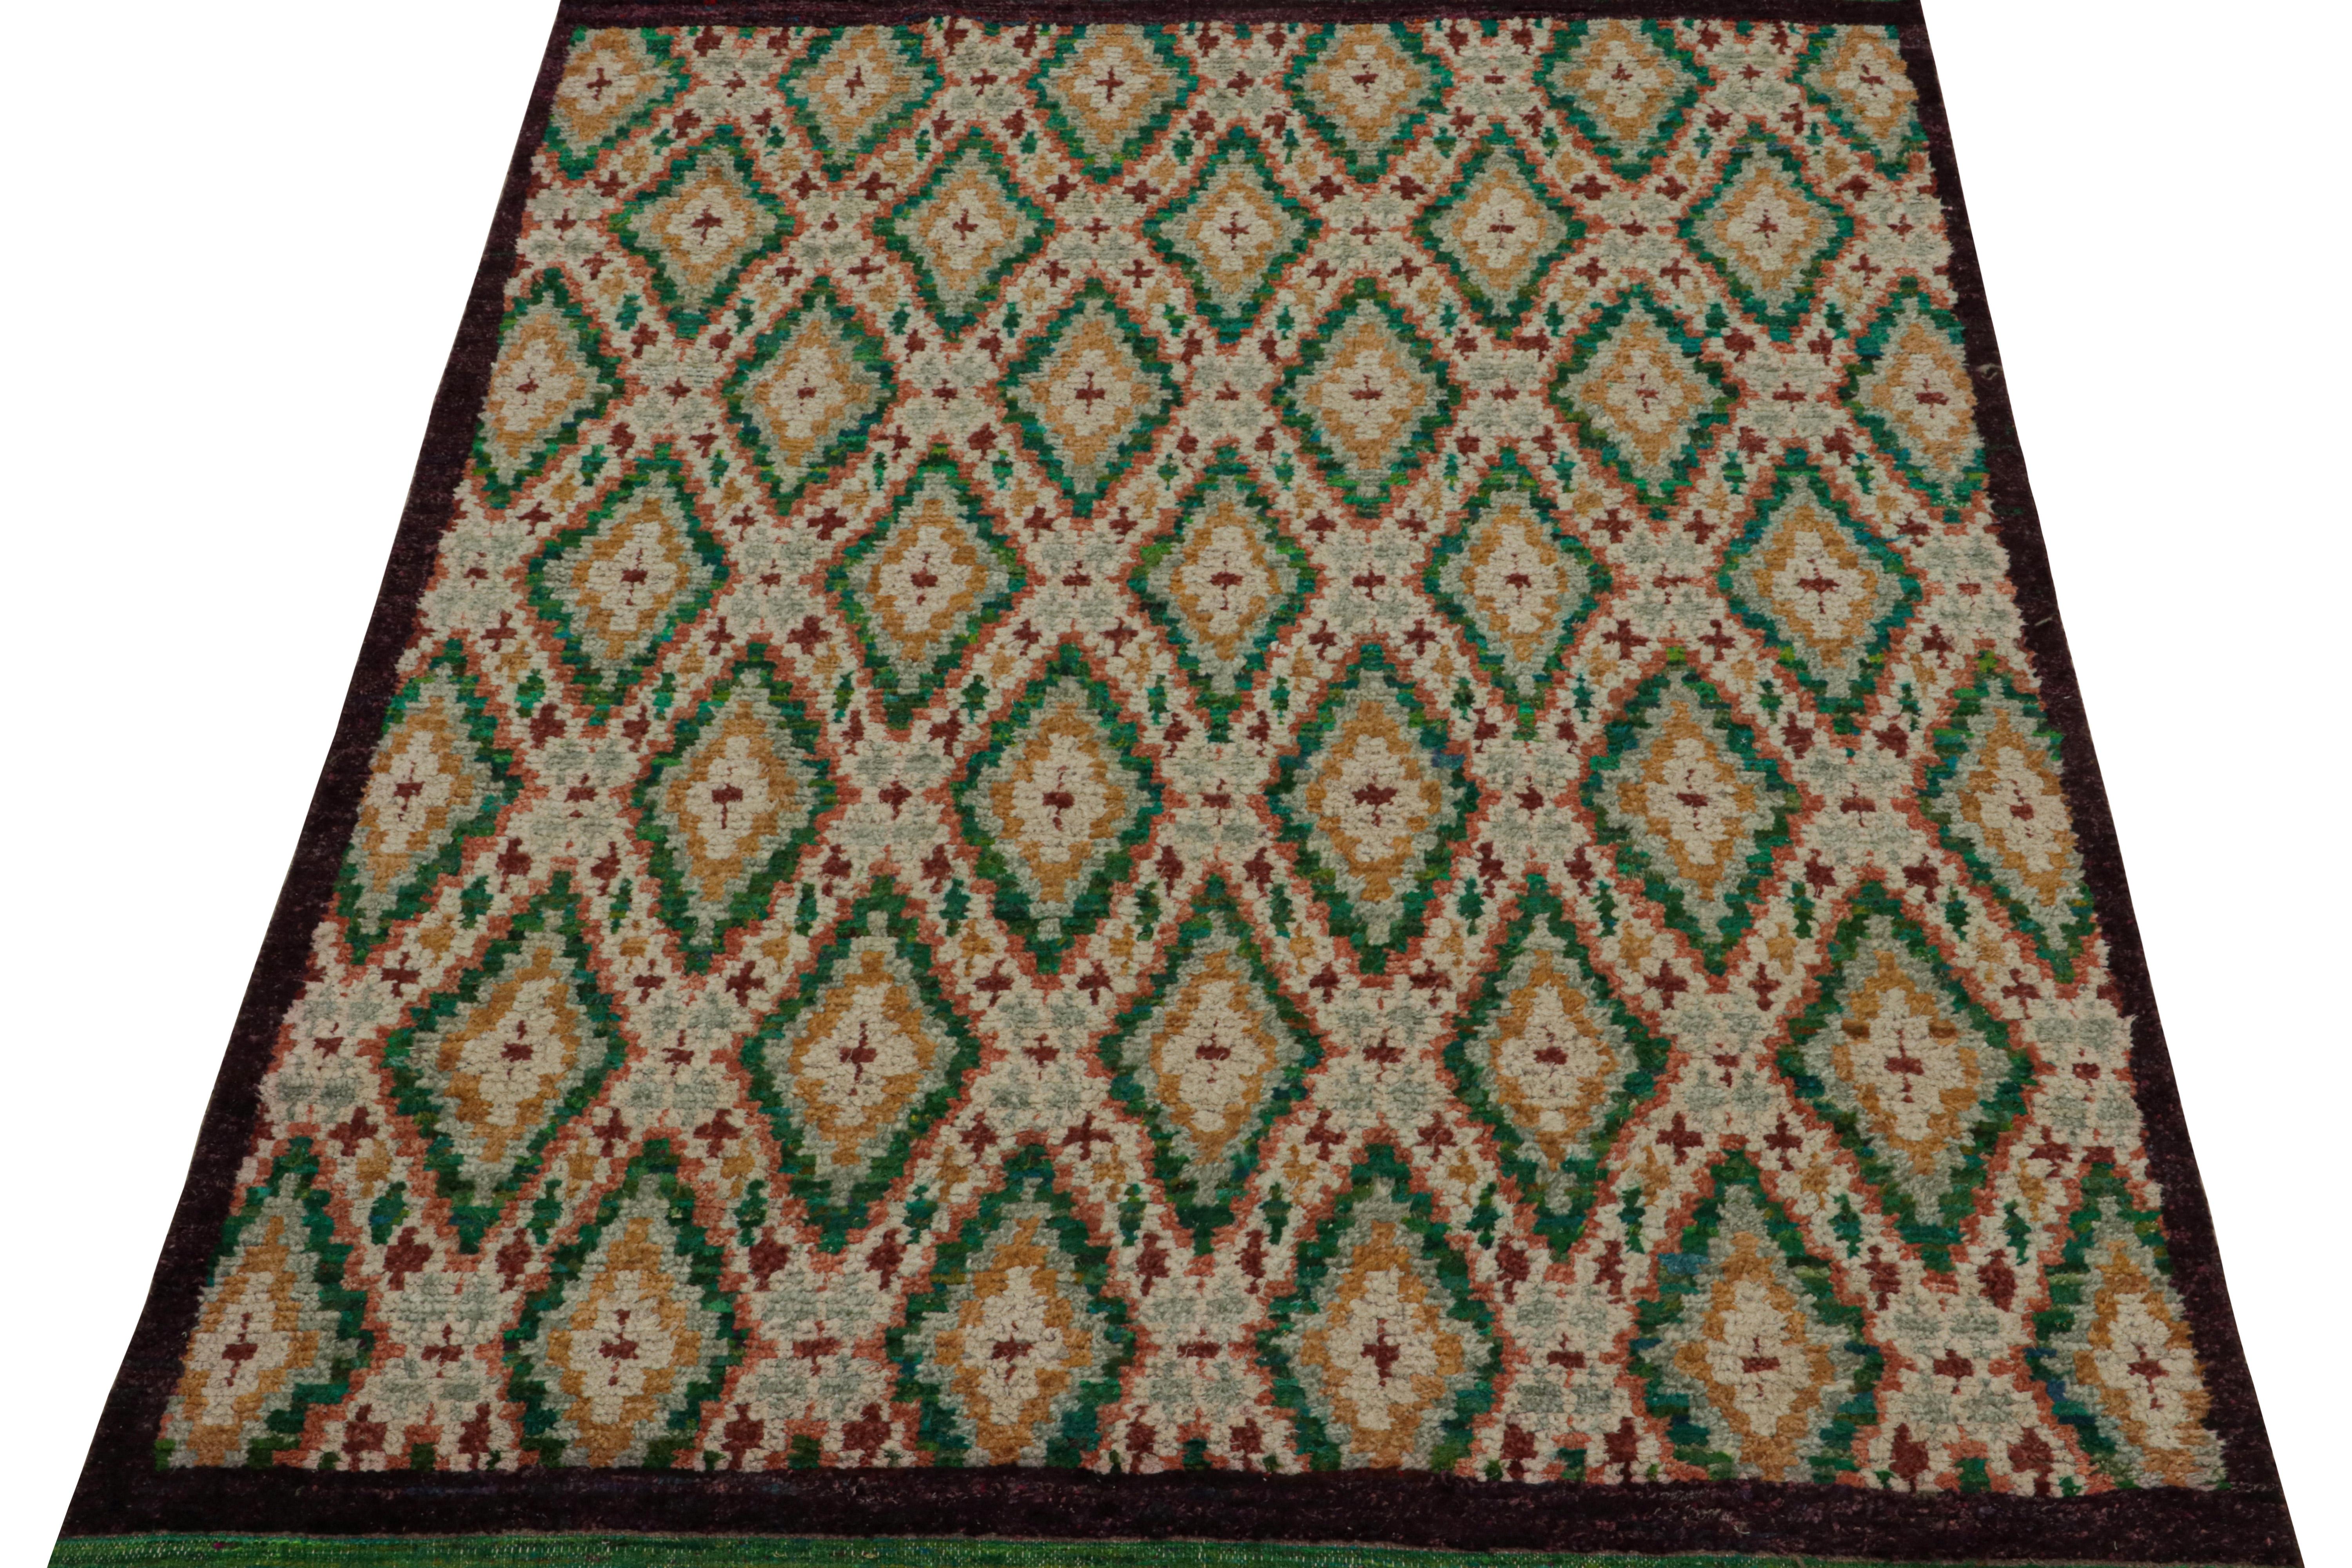 Tribal Rug & Kilim's Modernity Moroccan Style Rug in Green & Gold Geometric Patterns (tapis de style marocain moderne avec des motifs géométriques verts et dorés) en vente